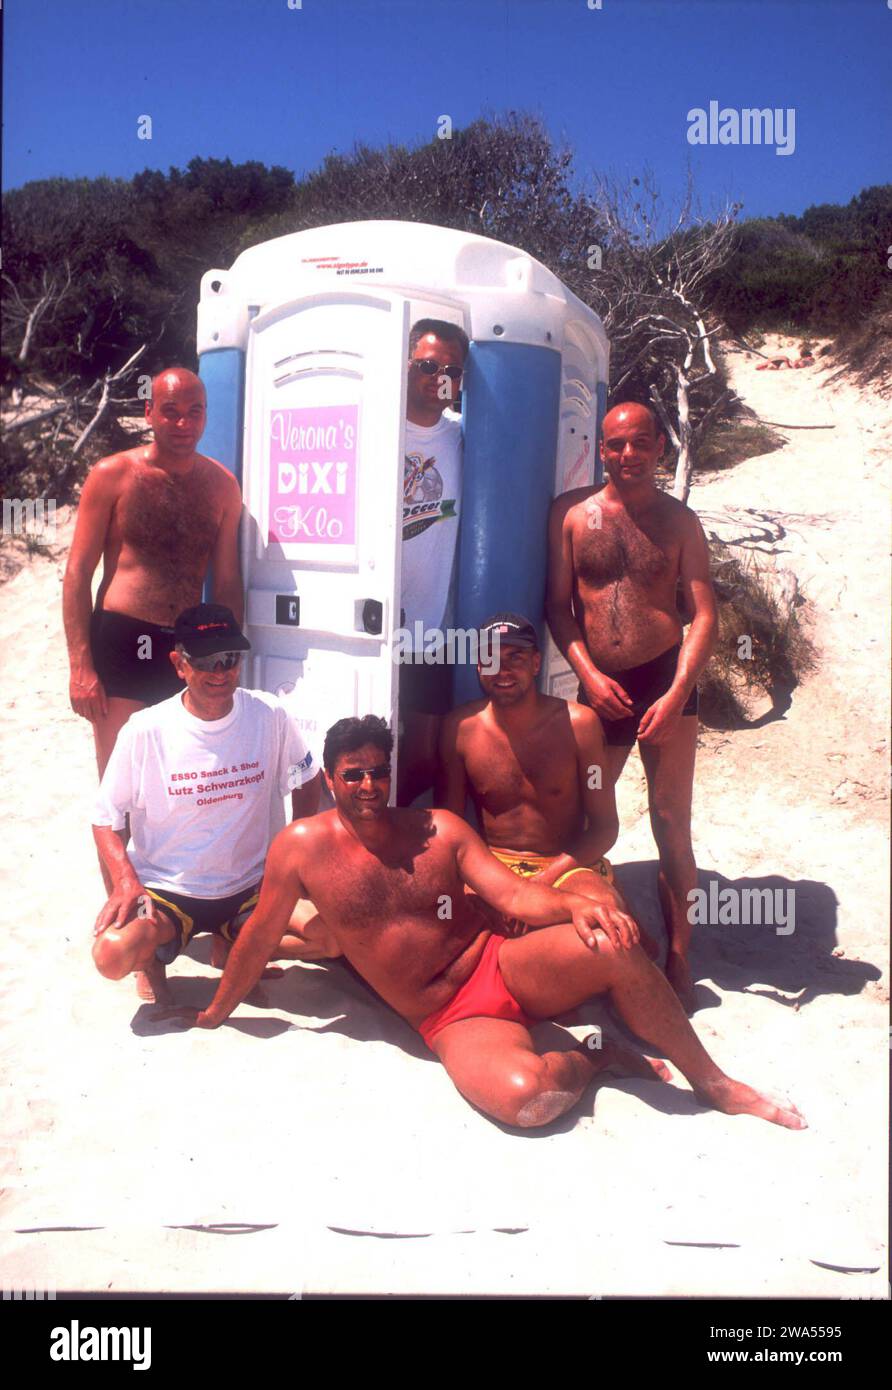 Männer posieren vor und mit Verona's Dixi Klo vom Auftritt von Verona Feldbusch bei 'Big Brother' am Strand auf Mallorca, Spanien 2000. Stockfoto